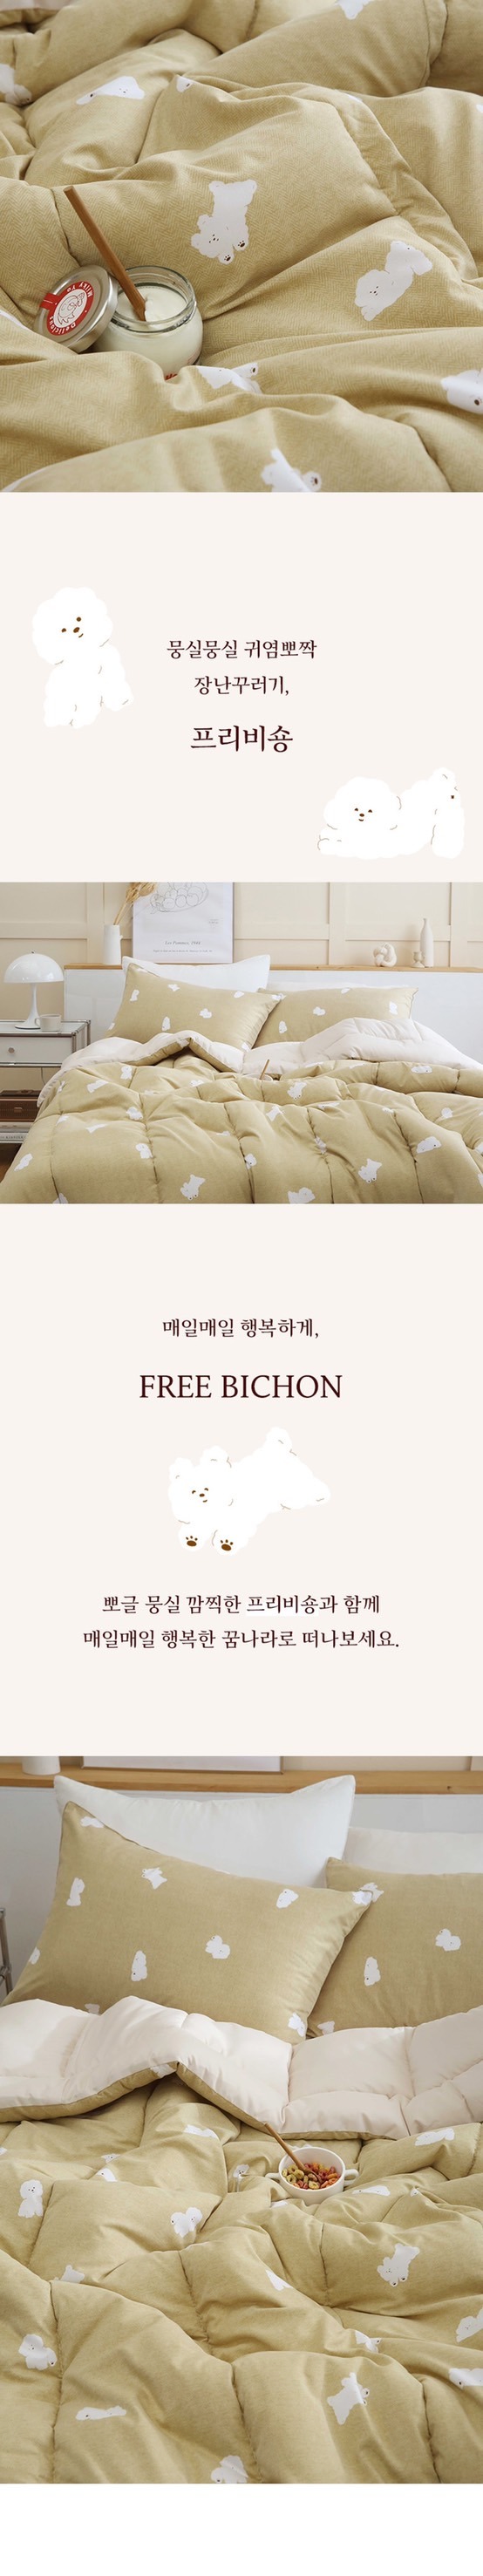 韓國棉被》Flora韓國製棉被～輕盈、親膚、保暖、可機洗，今年冷冬就靠它！